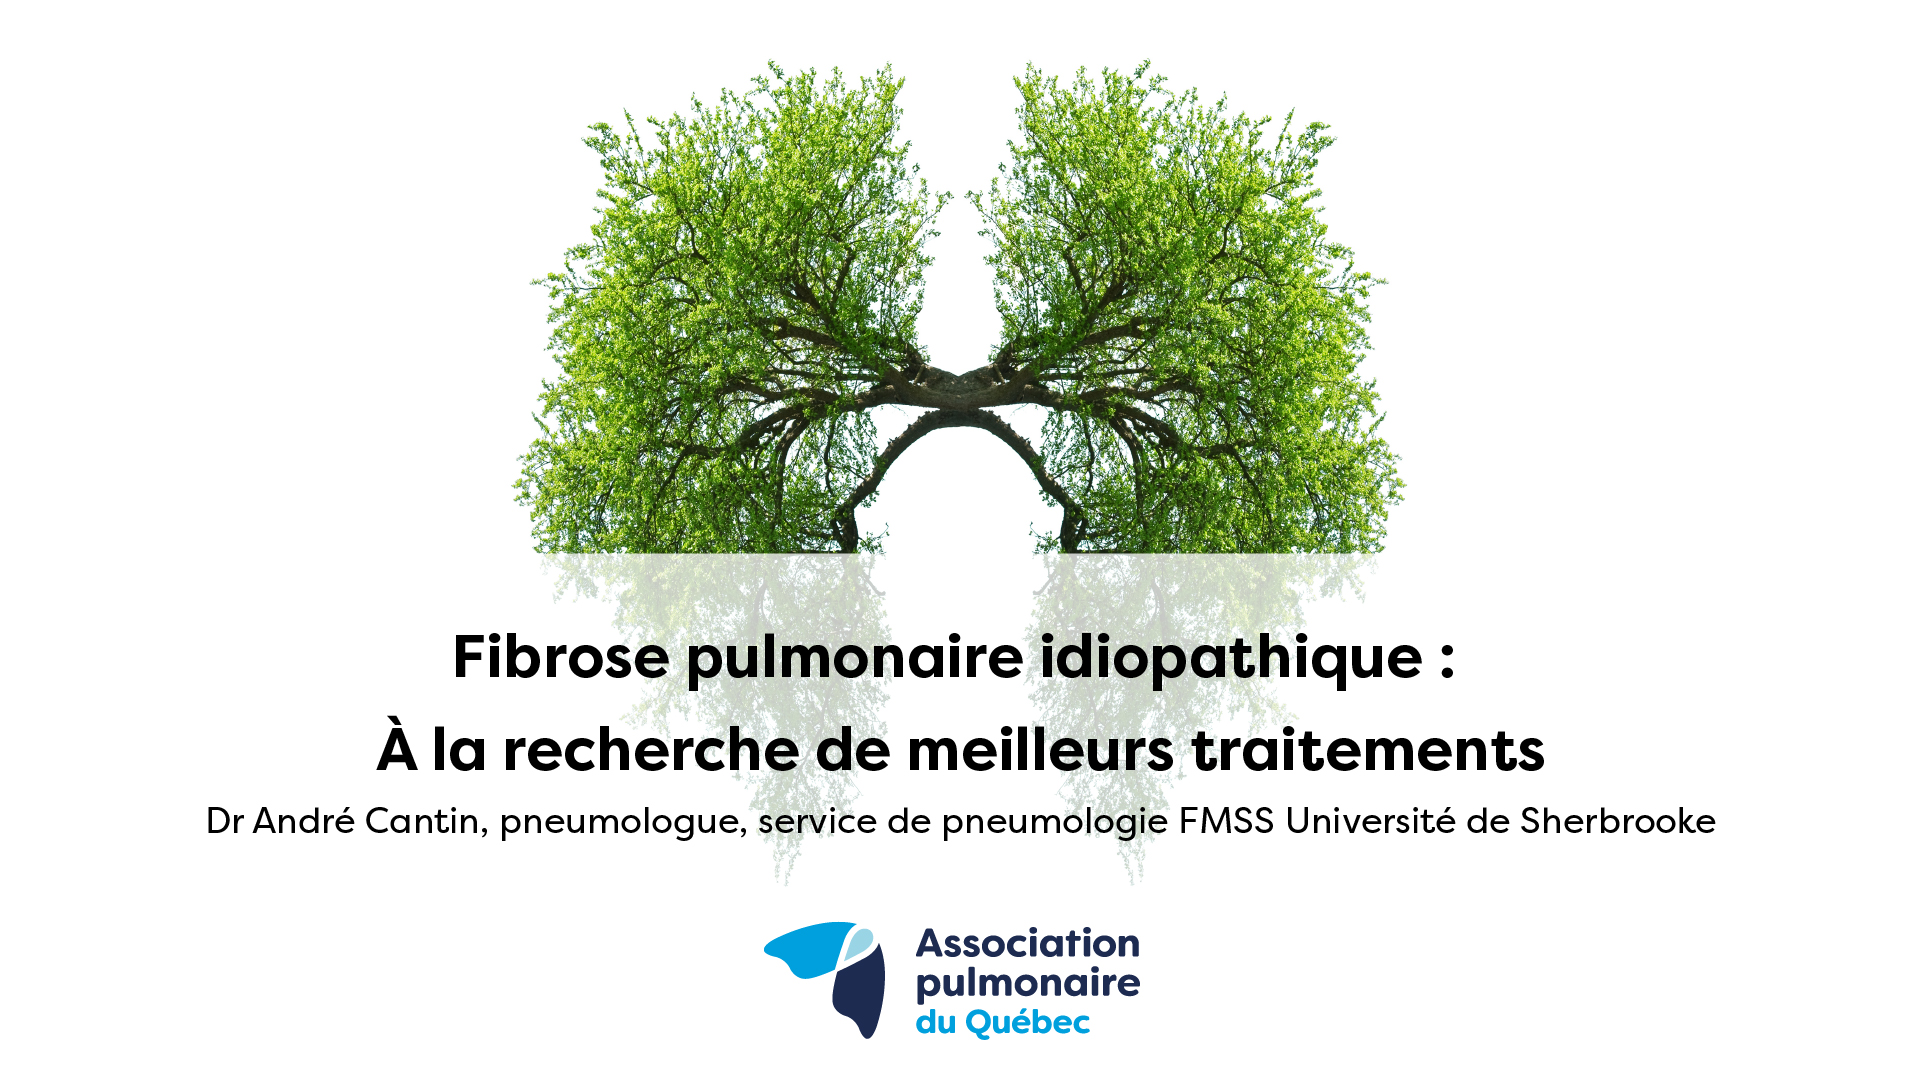 La fibrose pulmonaire idiopathique : À la recherche de meilleurs traitements